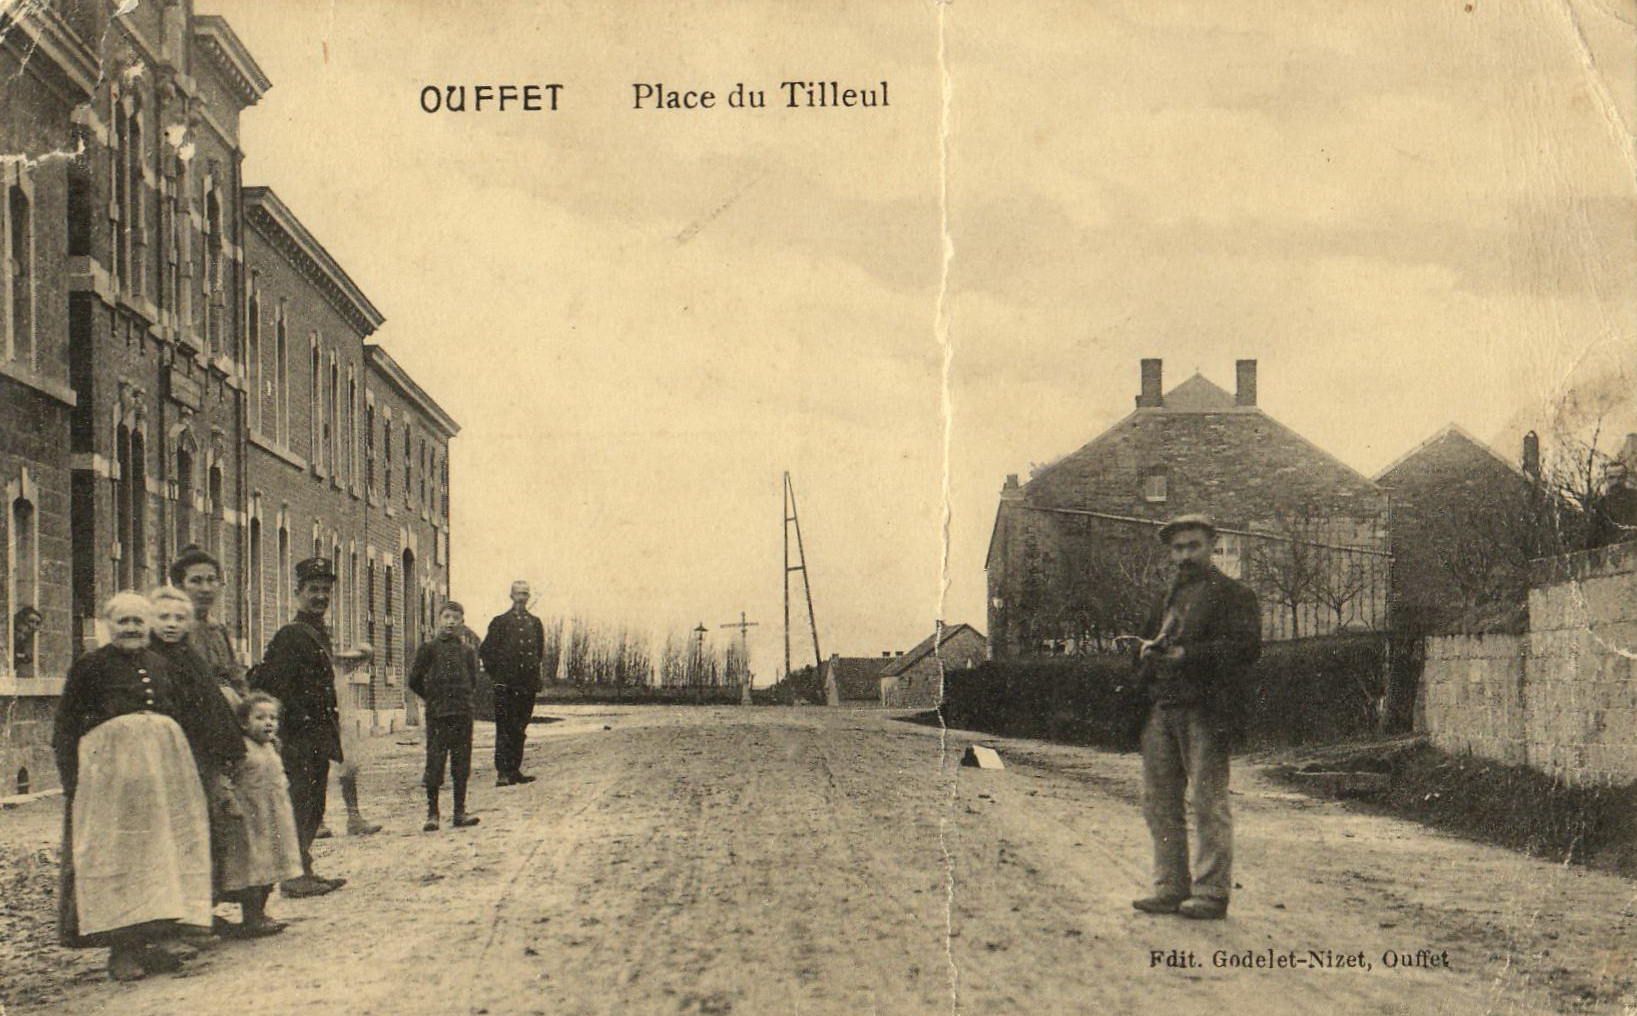 Ouffet - Place du Tilleul